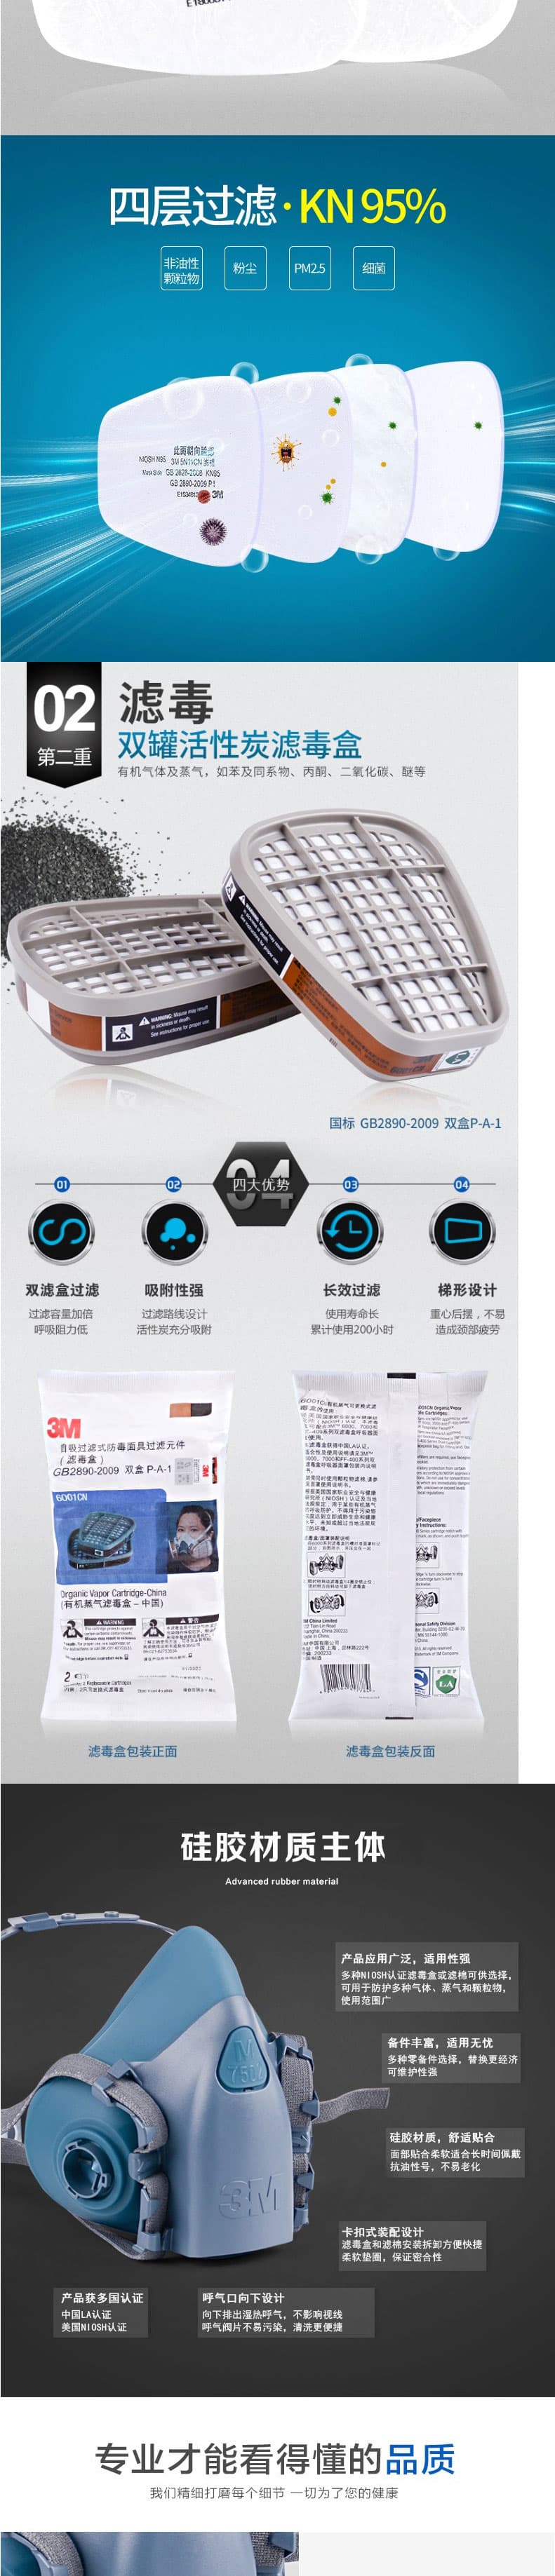 3M 7502 硅胶半面型防护面罩--广州防毒面具供应商